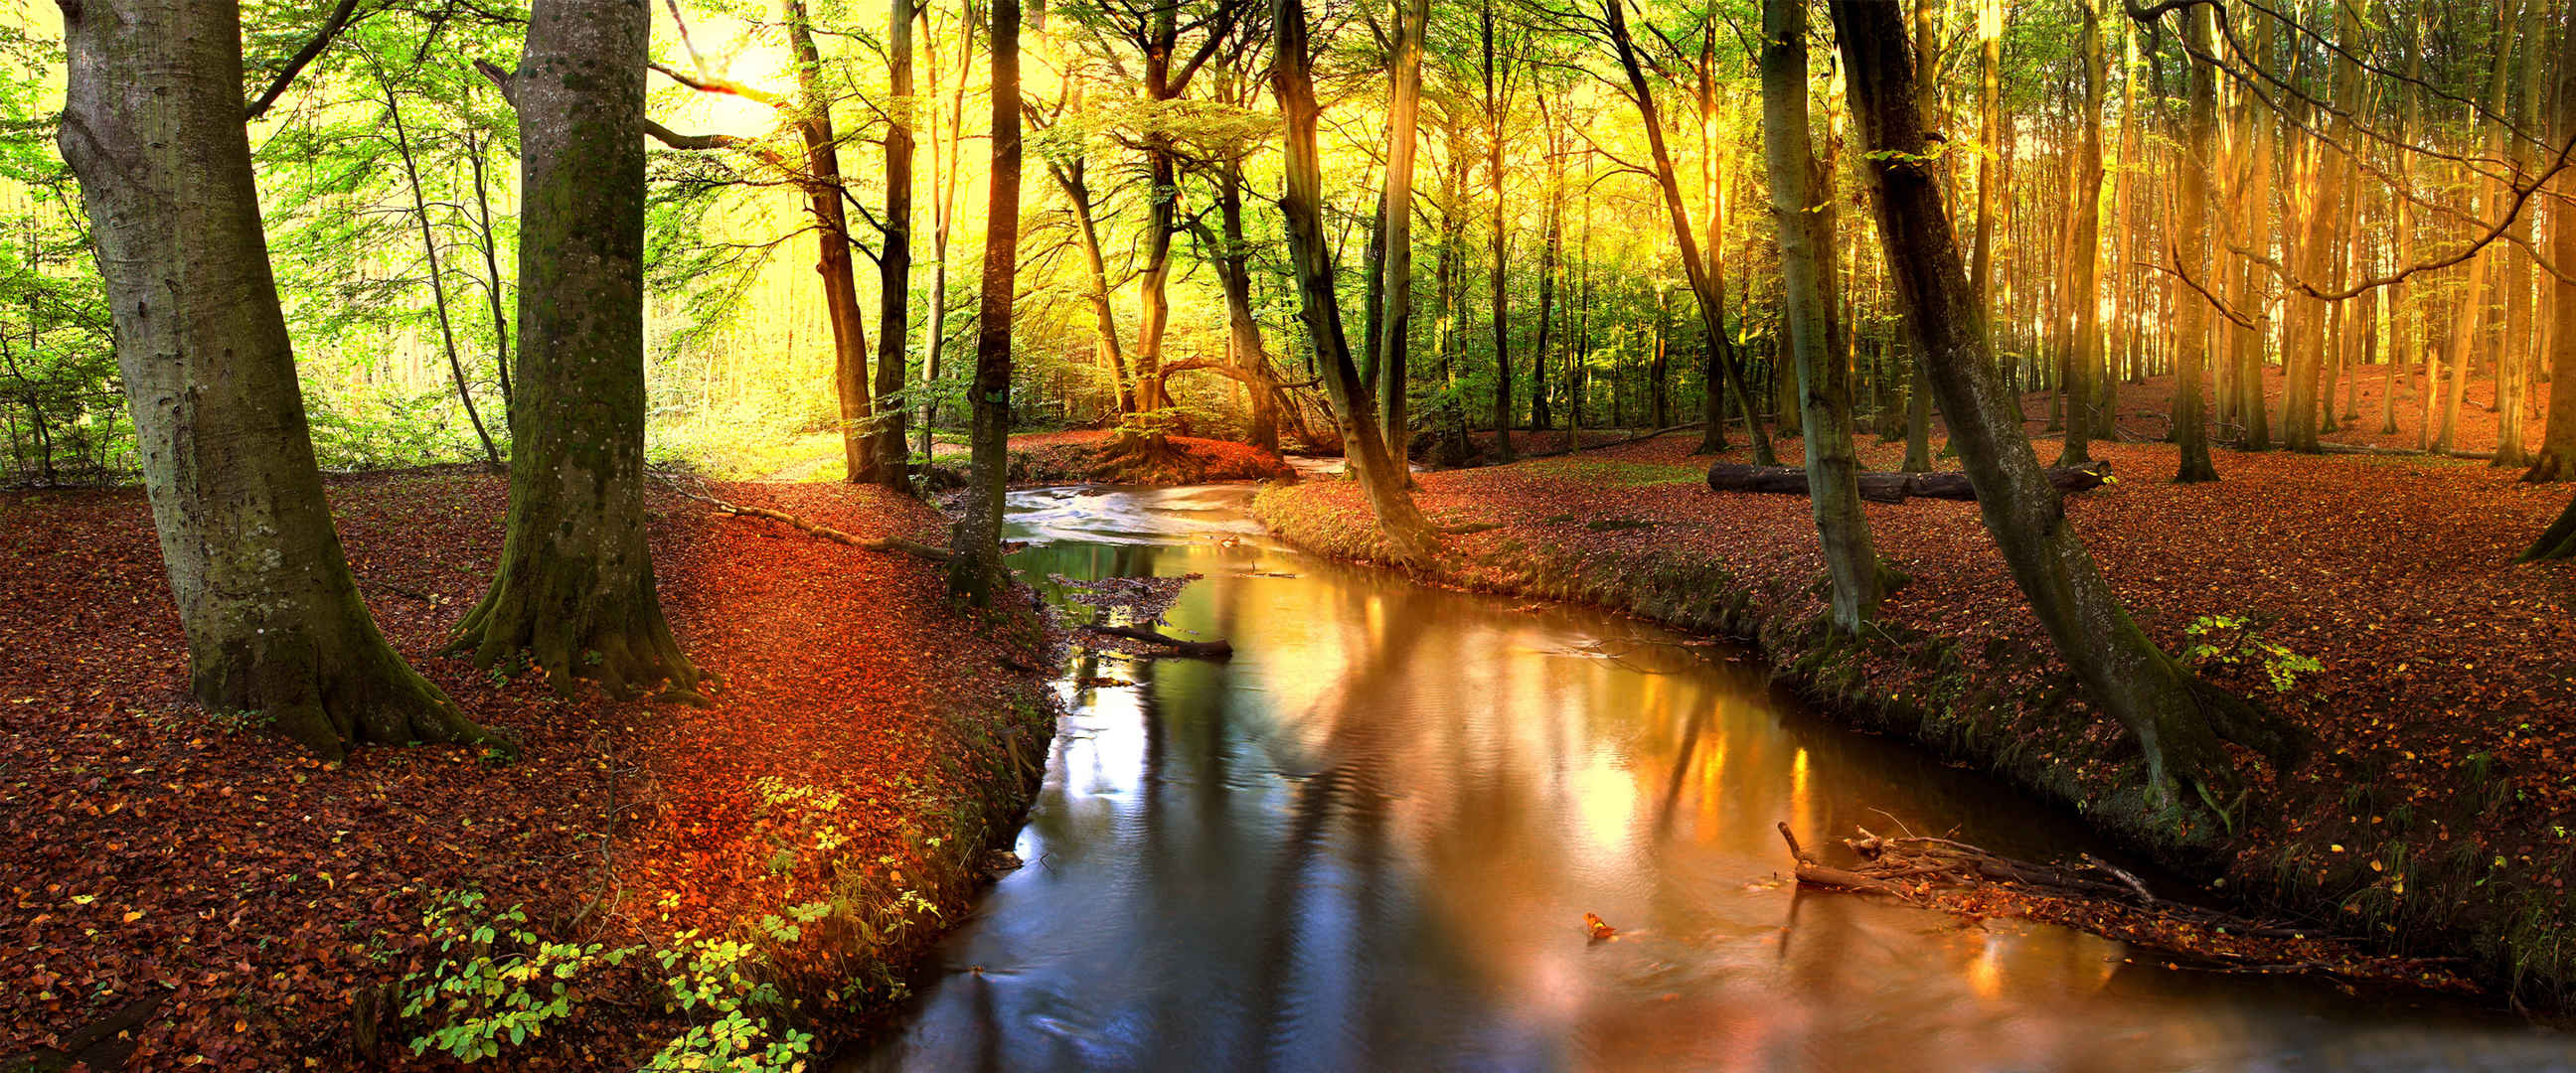 森林河流阳光图片自然风景